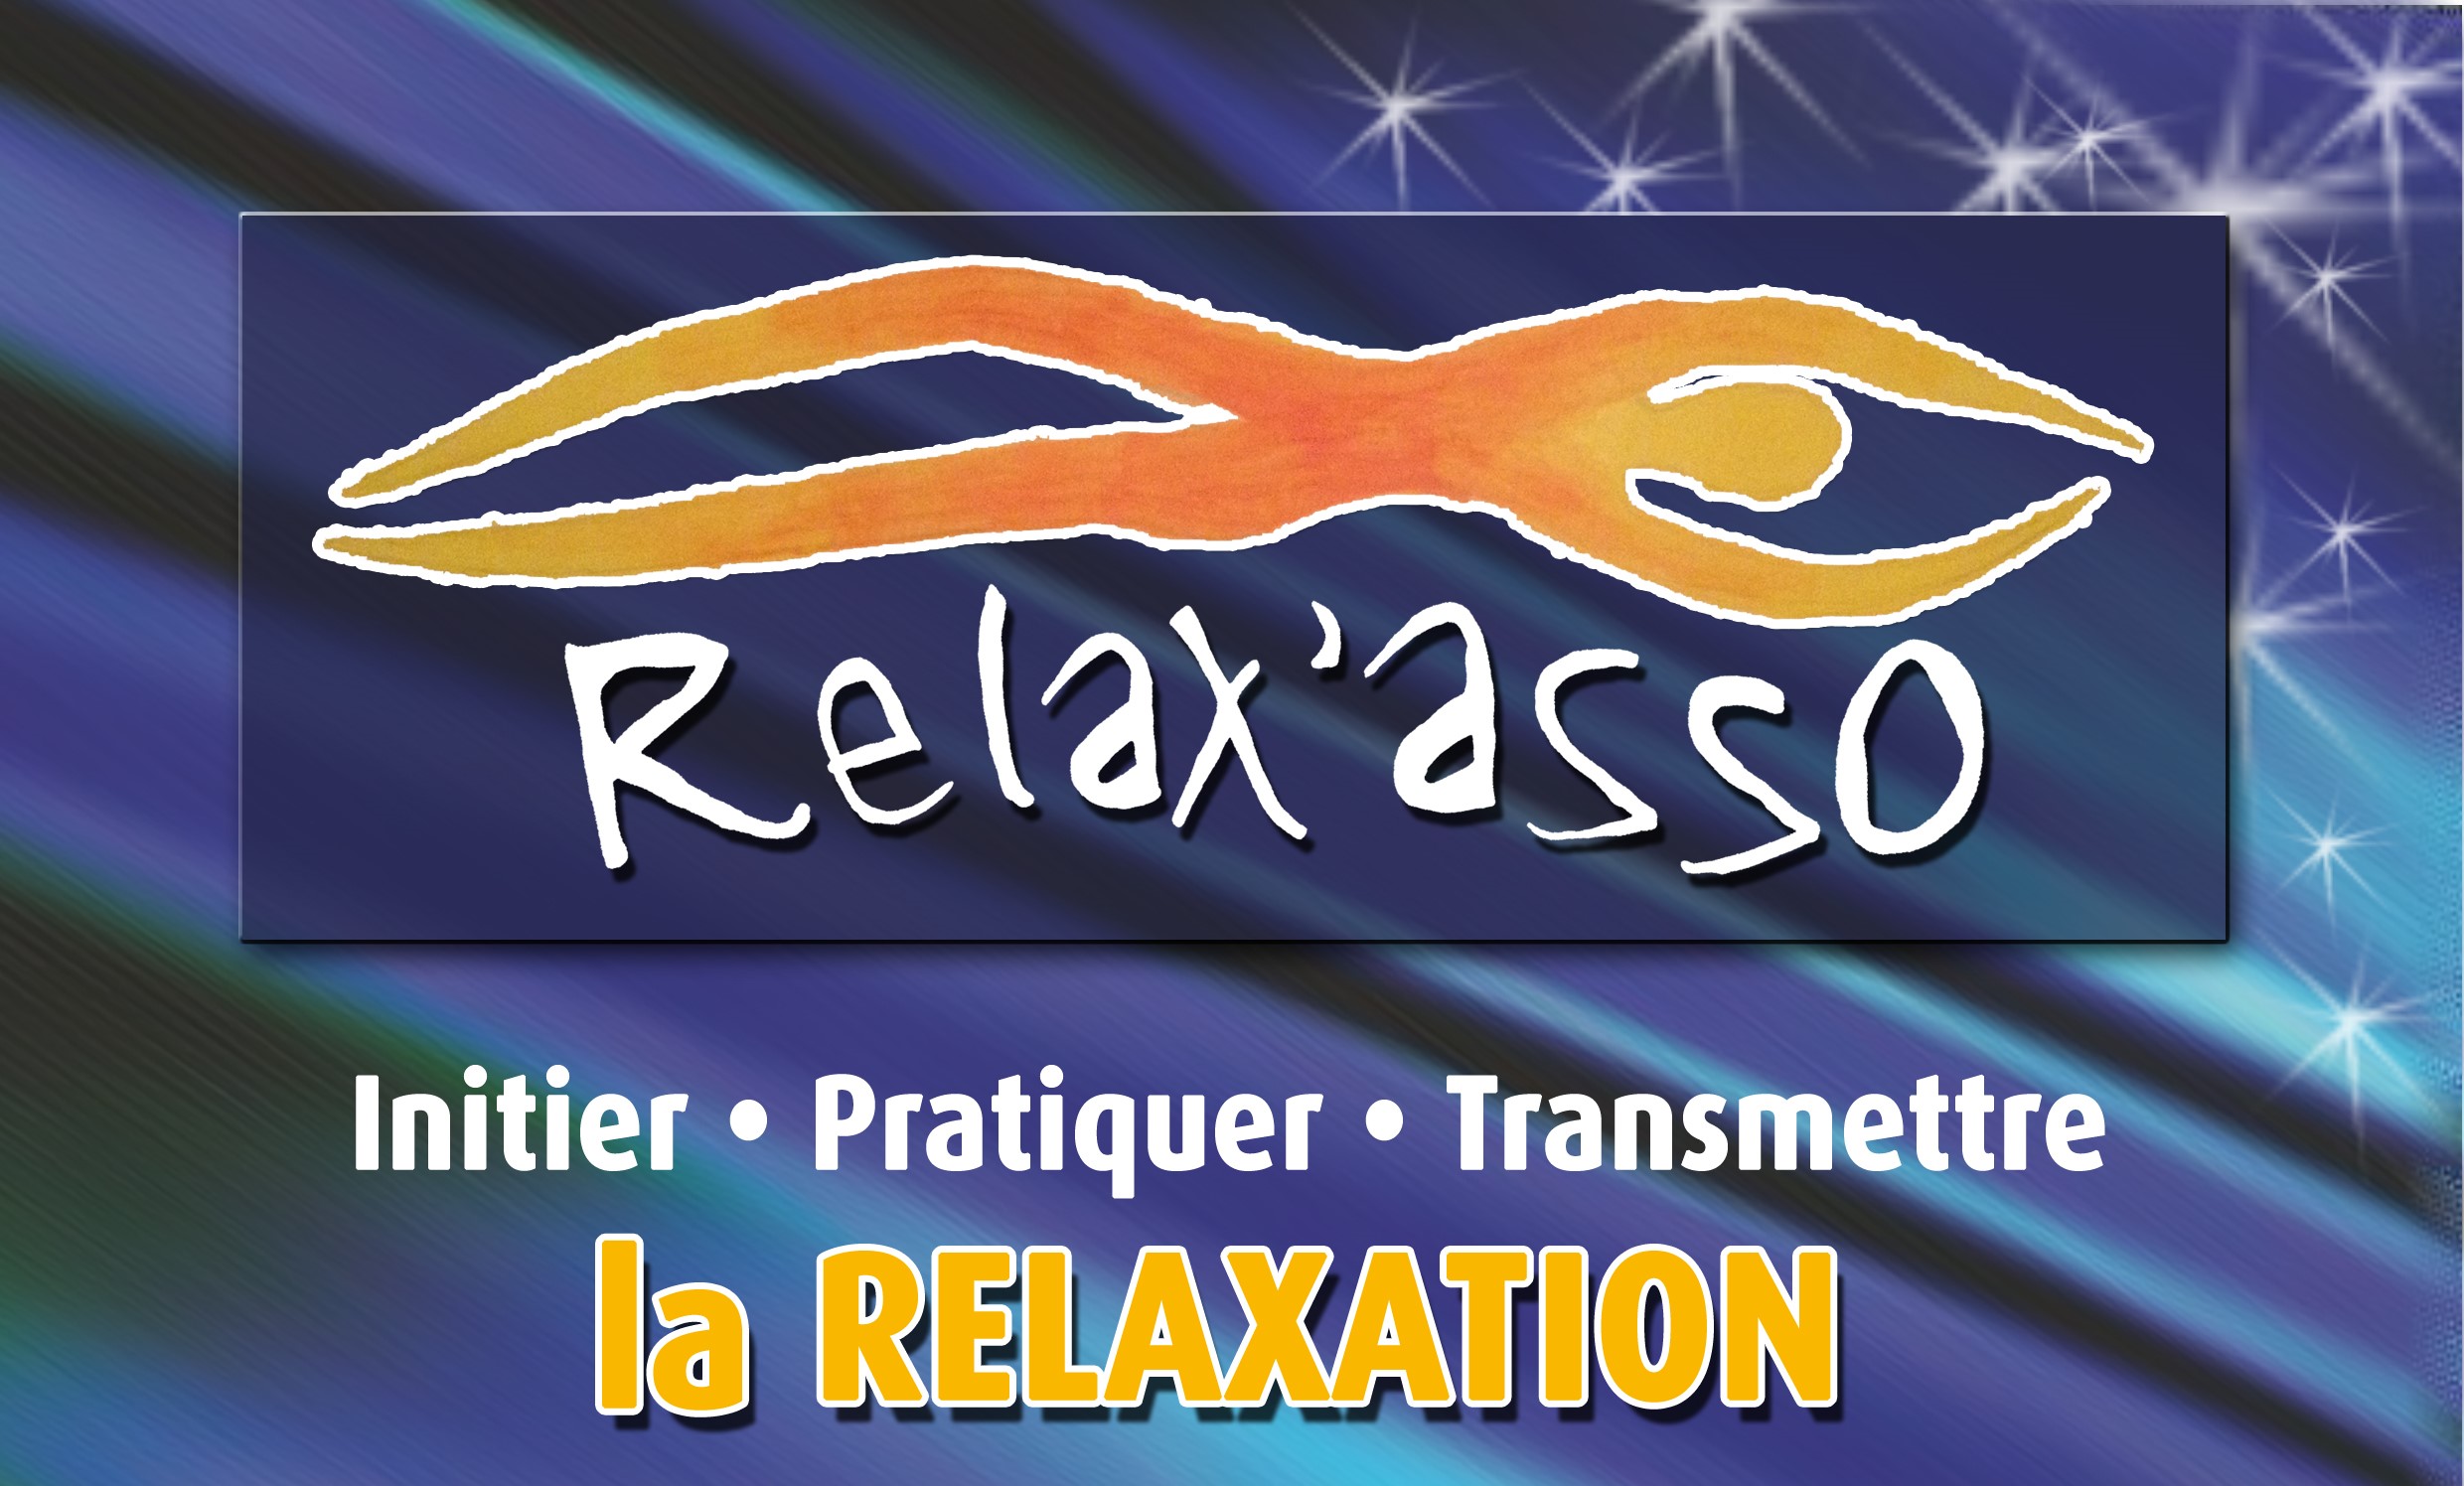 Relax Asso Logo ok.jpg